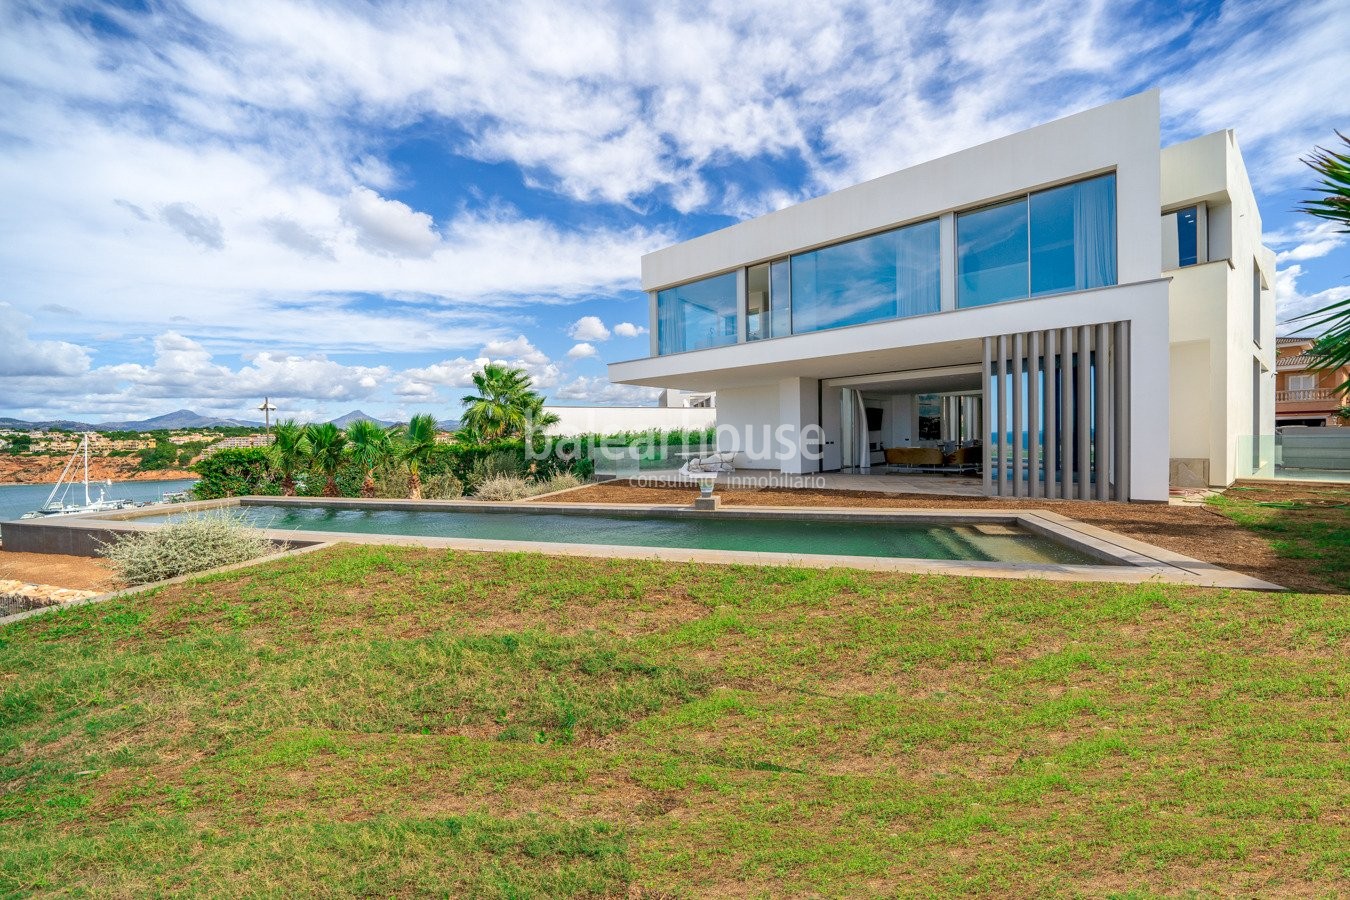 Neue moderne Villa in erster Reihe mit spektakulärem Meerblick in Port Adriano.